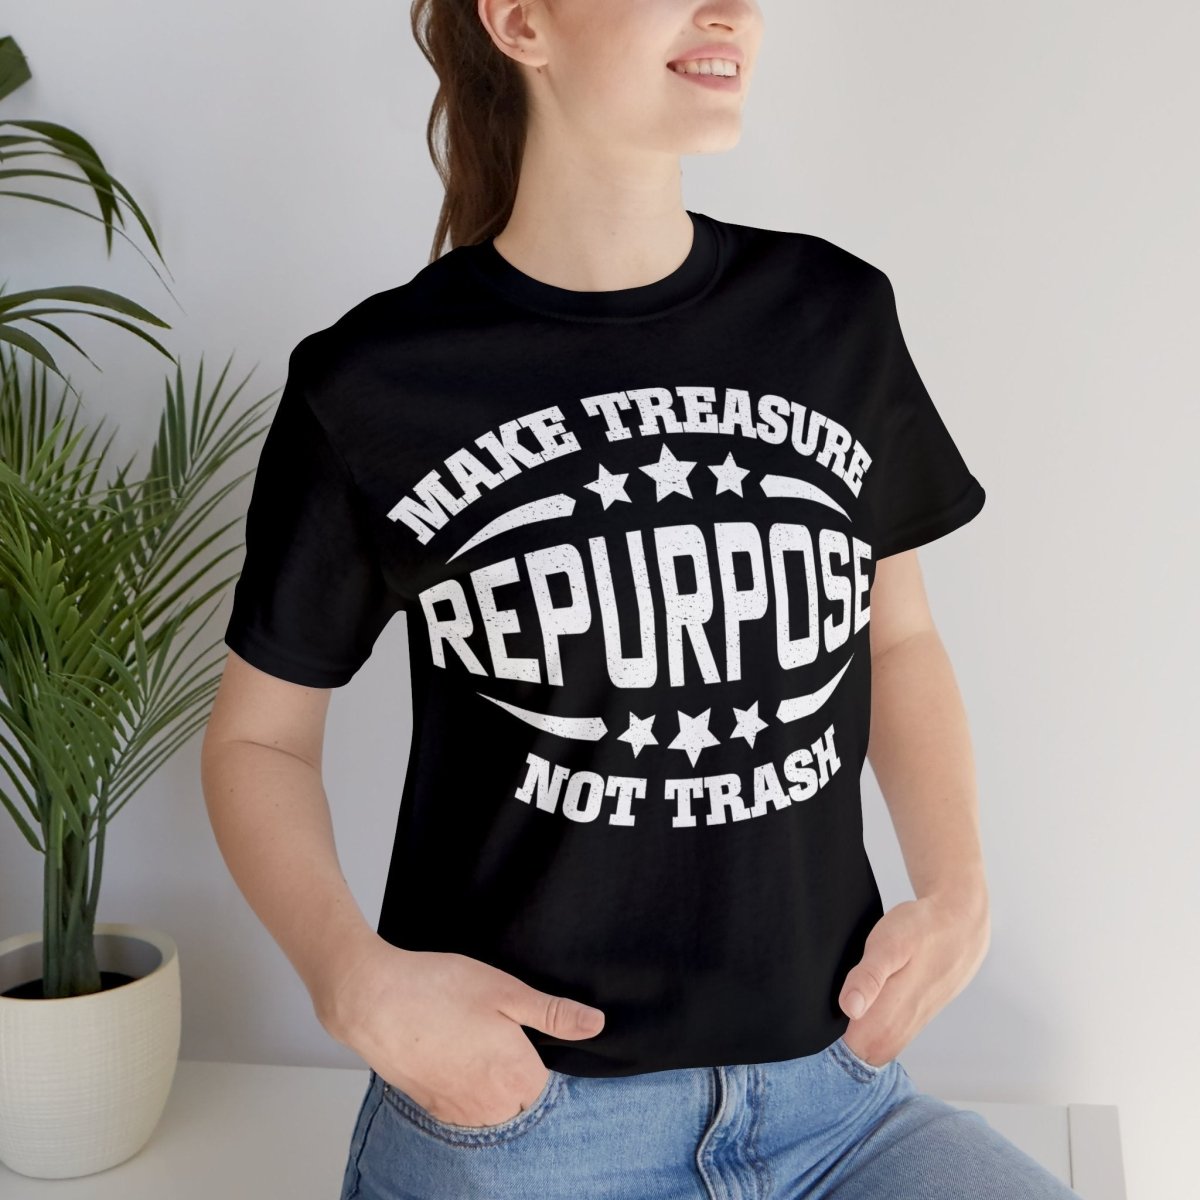 Repurpose Make Treasure Not Trash Premium T-Shirt, ReUse, Remake, Redo, DIY, Recycle, Self Reliance, Fix It, Junkin' Genius